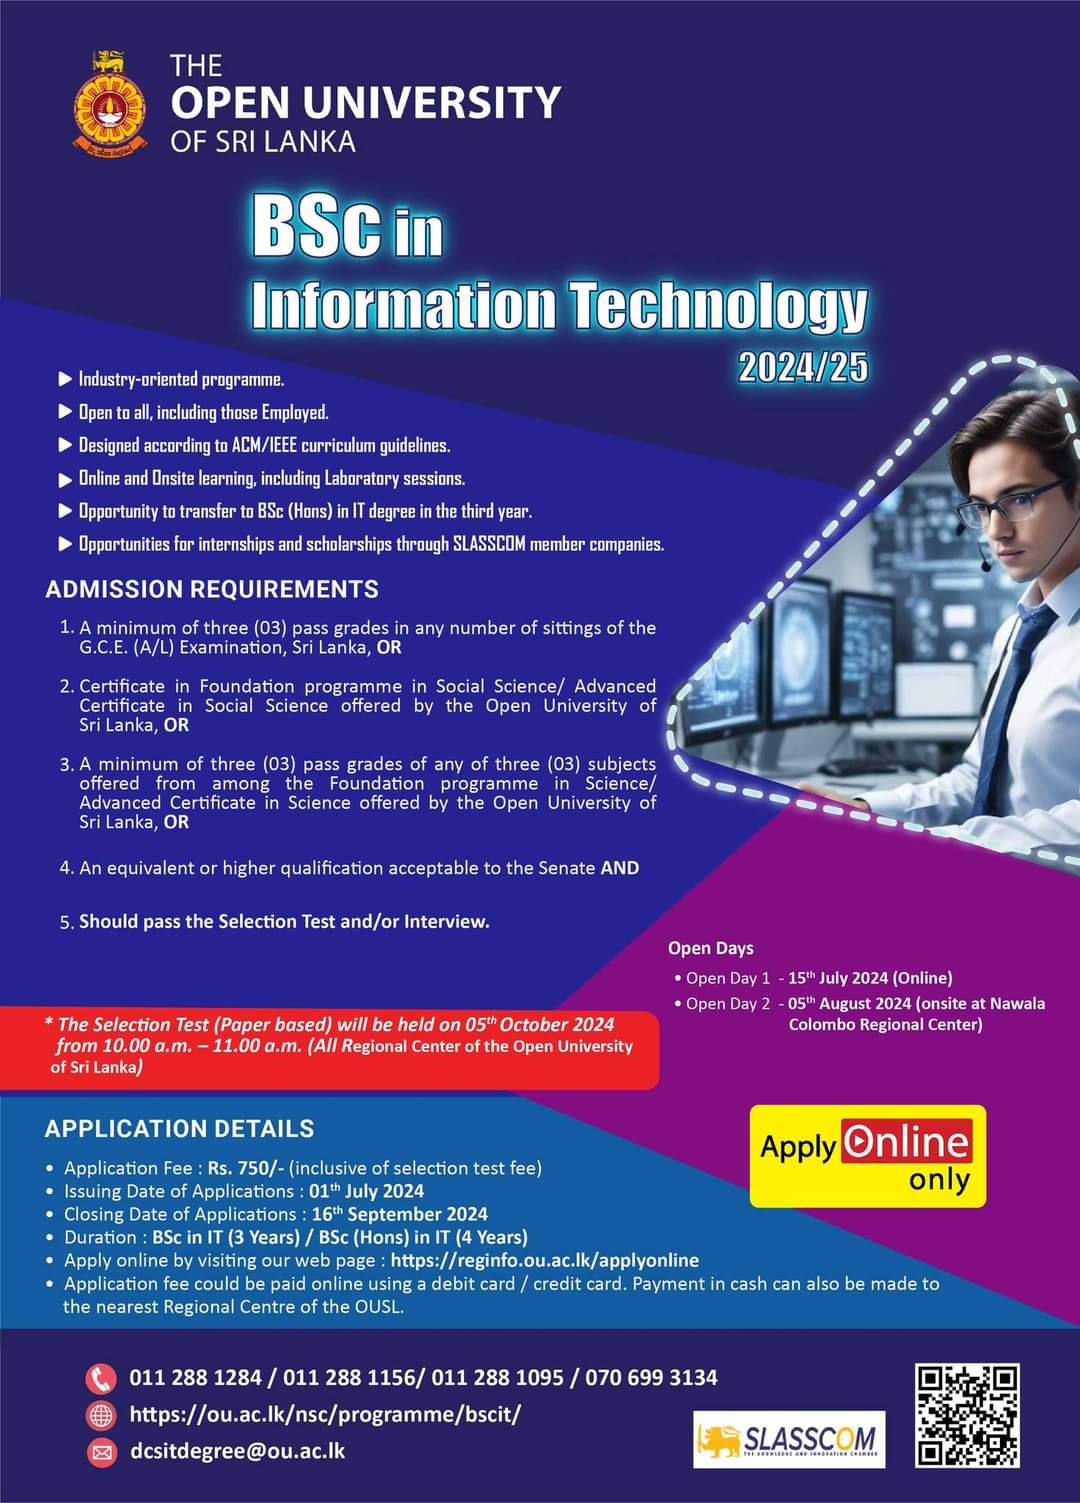 BSC in Information Technology 2024/25 - Open University of Sri Lanka